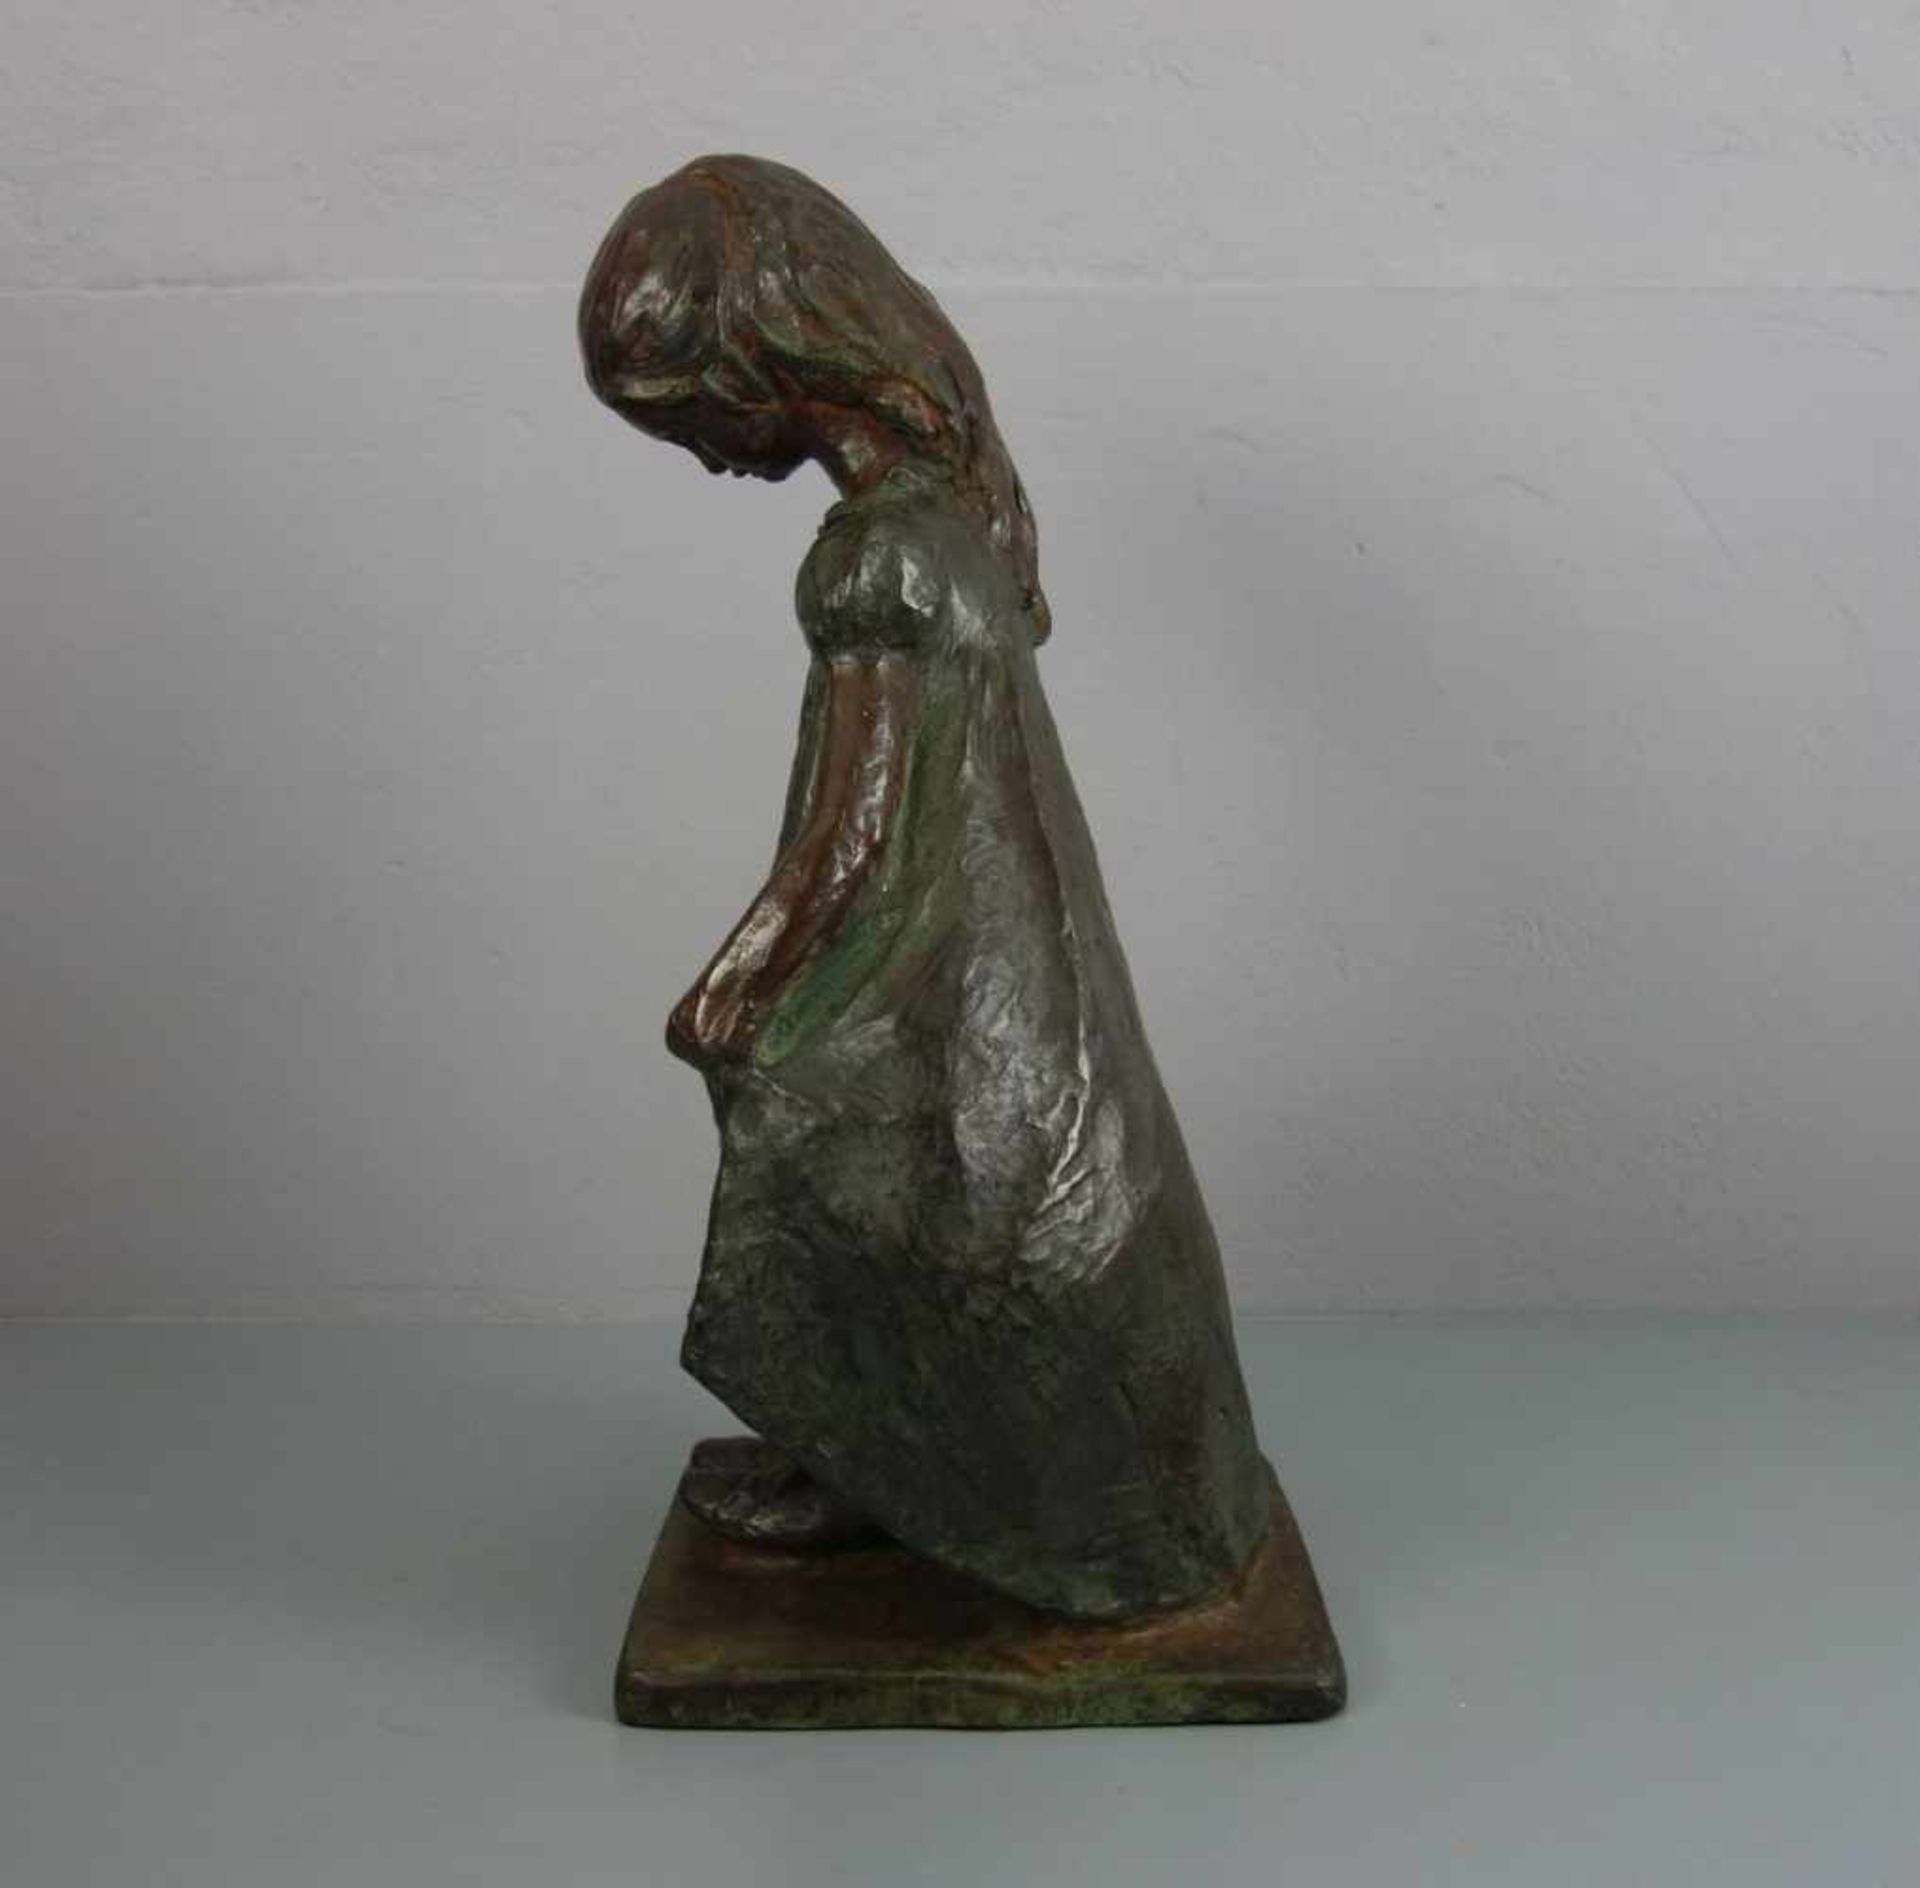 PRODING, AUSTIN (australischer Bildhauer des 20. Jh.), Skulptur / sculpture: "Mädchen mit Pumps",